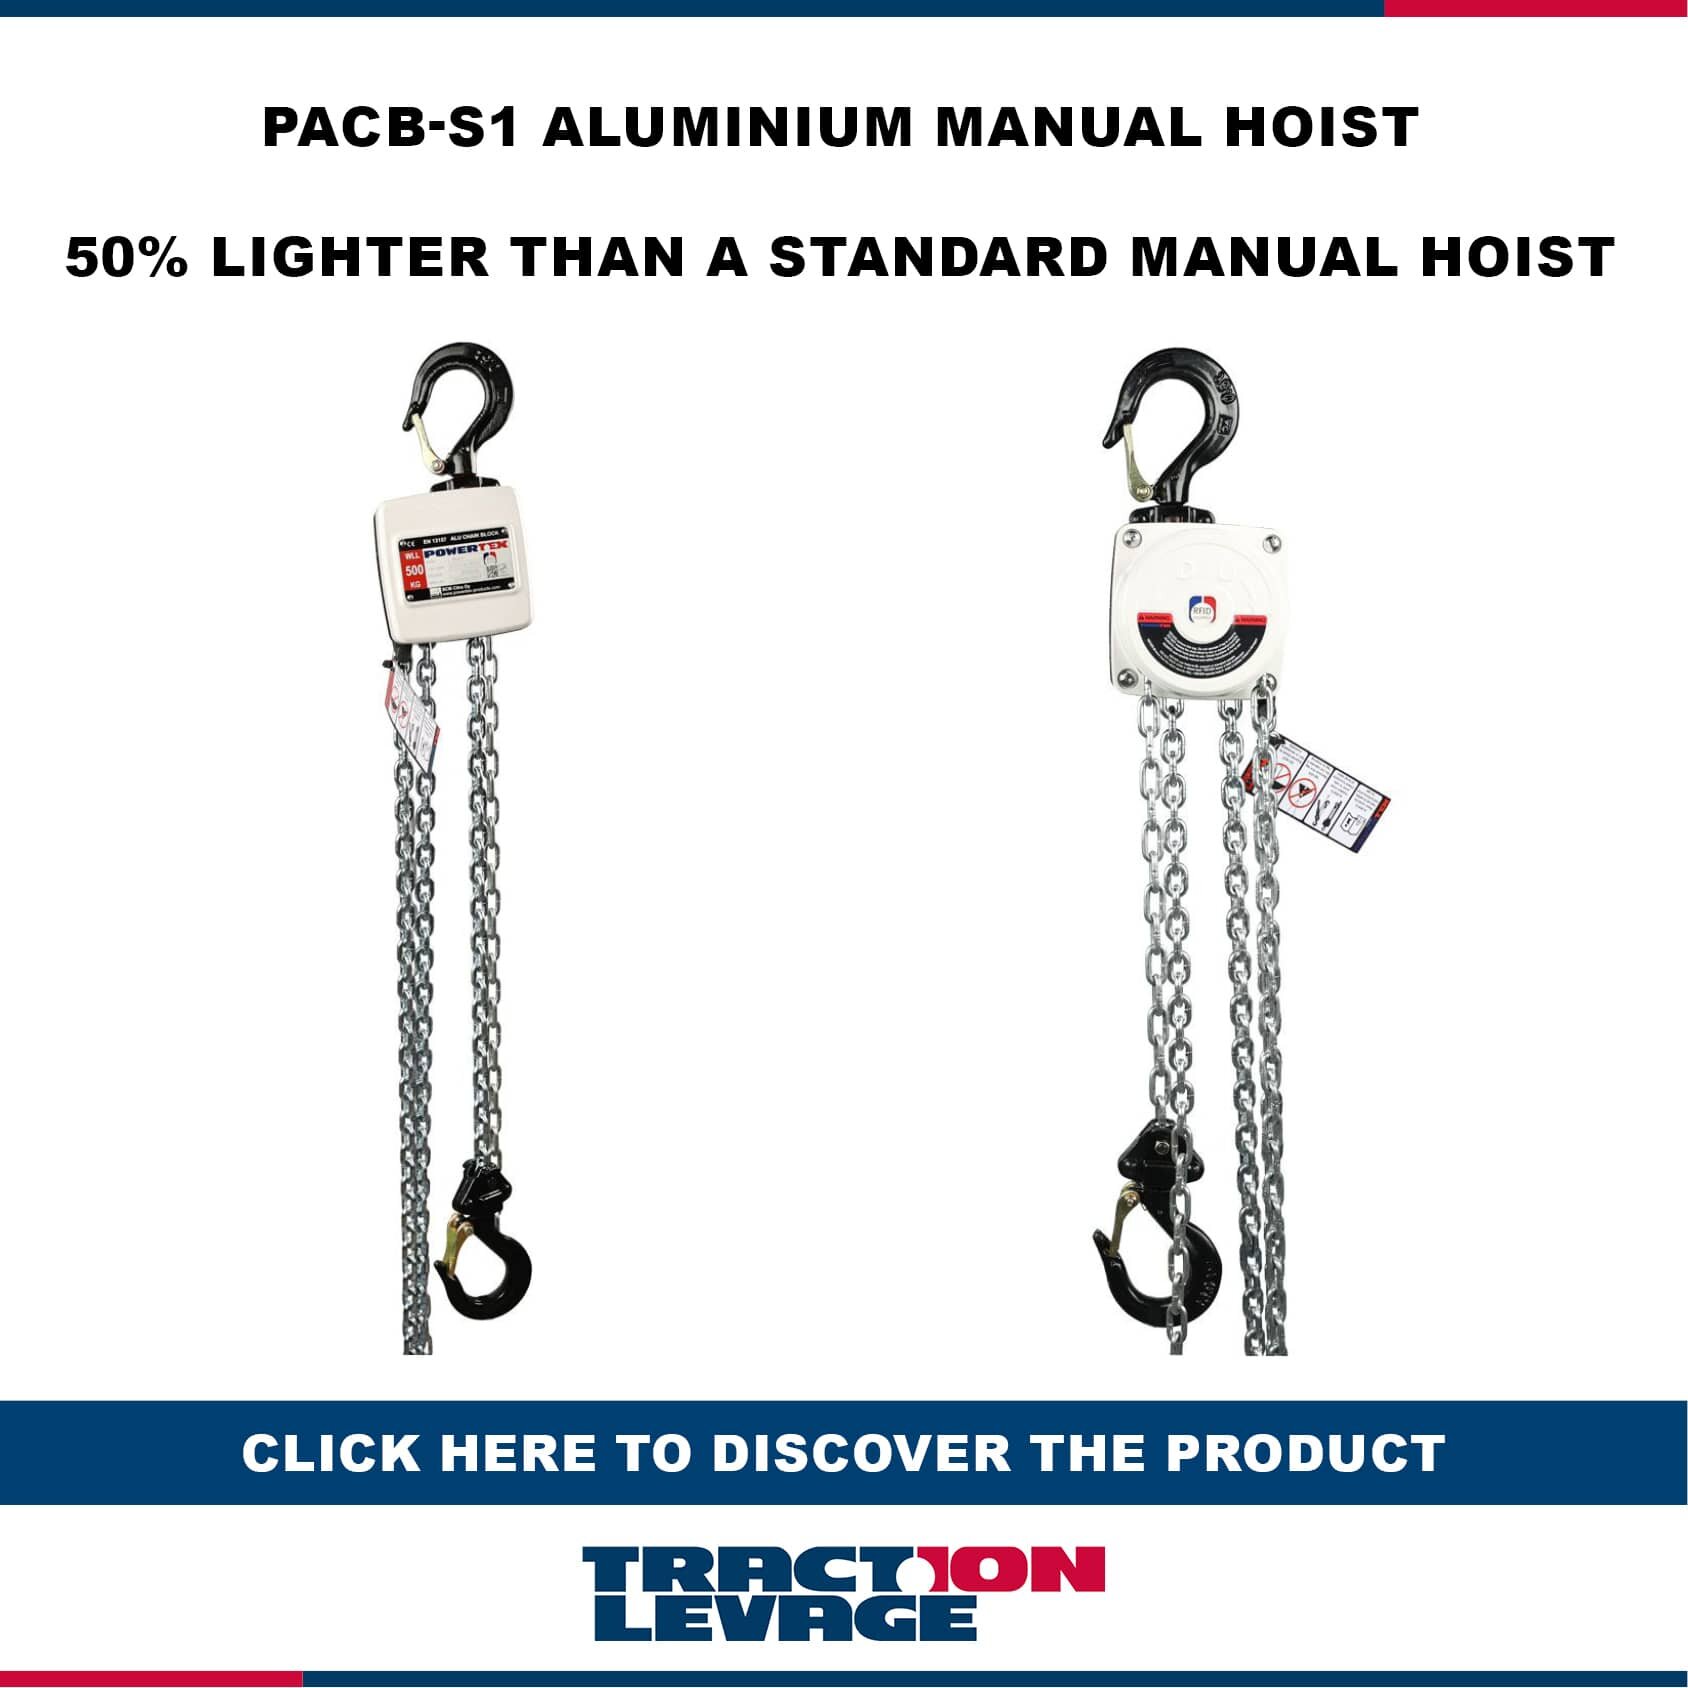 PACB-S1 aluminium manual hoist